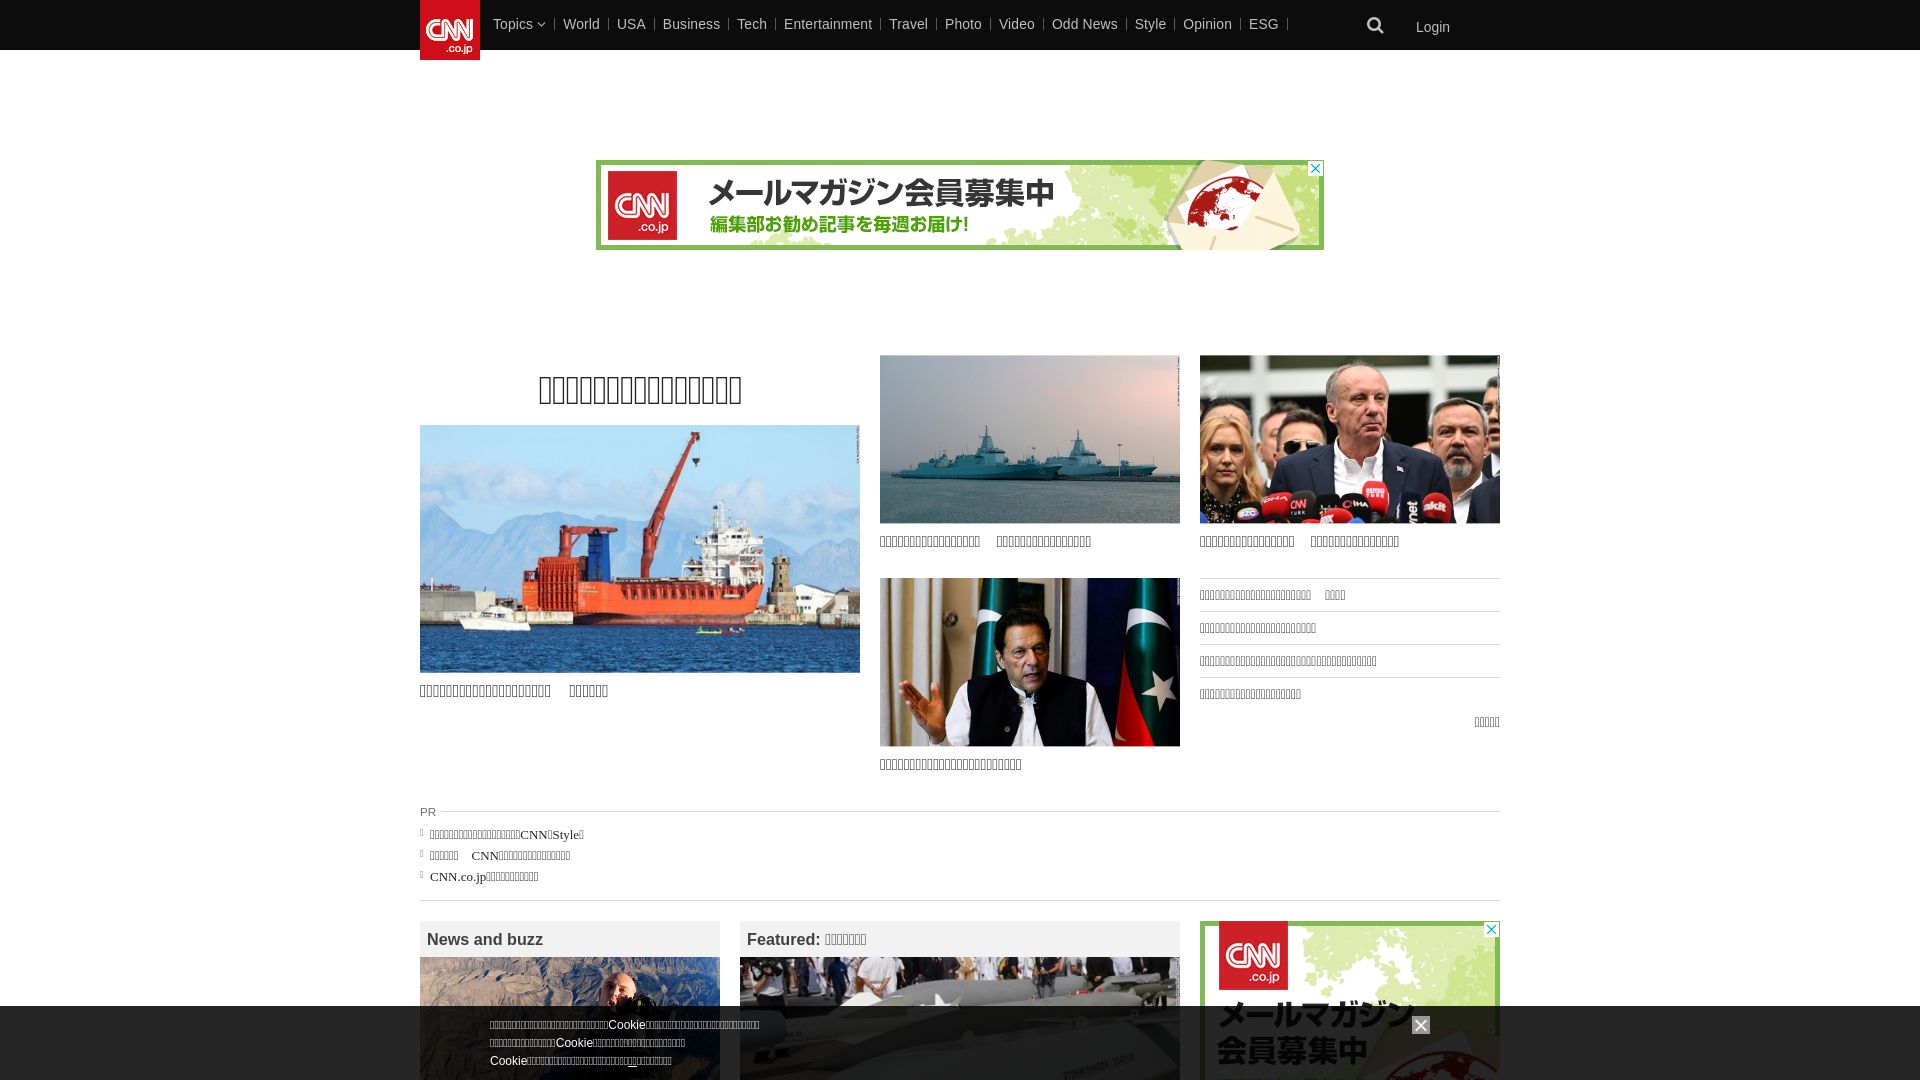 État du site web cnn.co.jp est   EN LIGNE